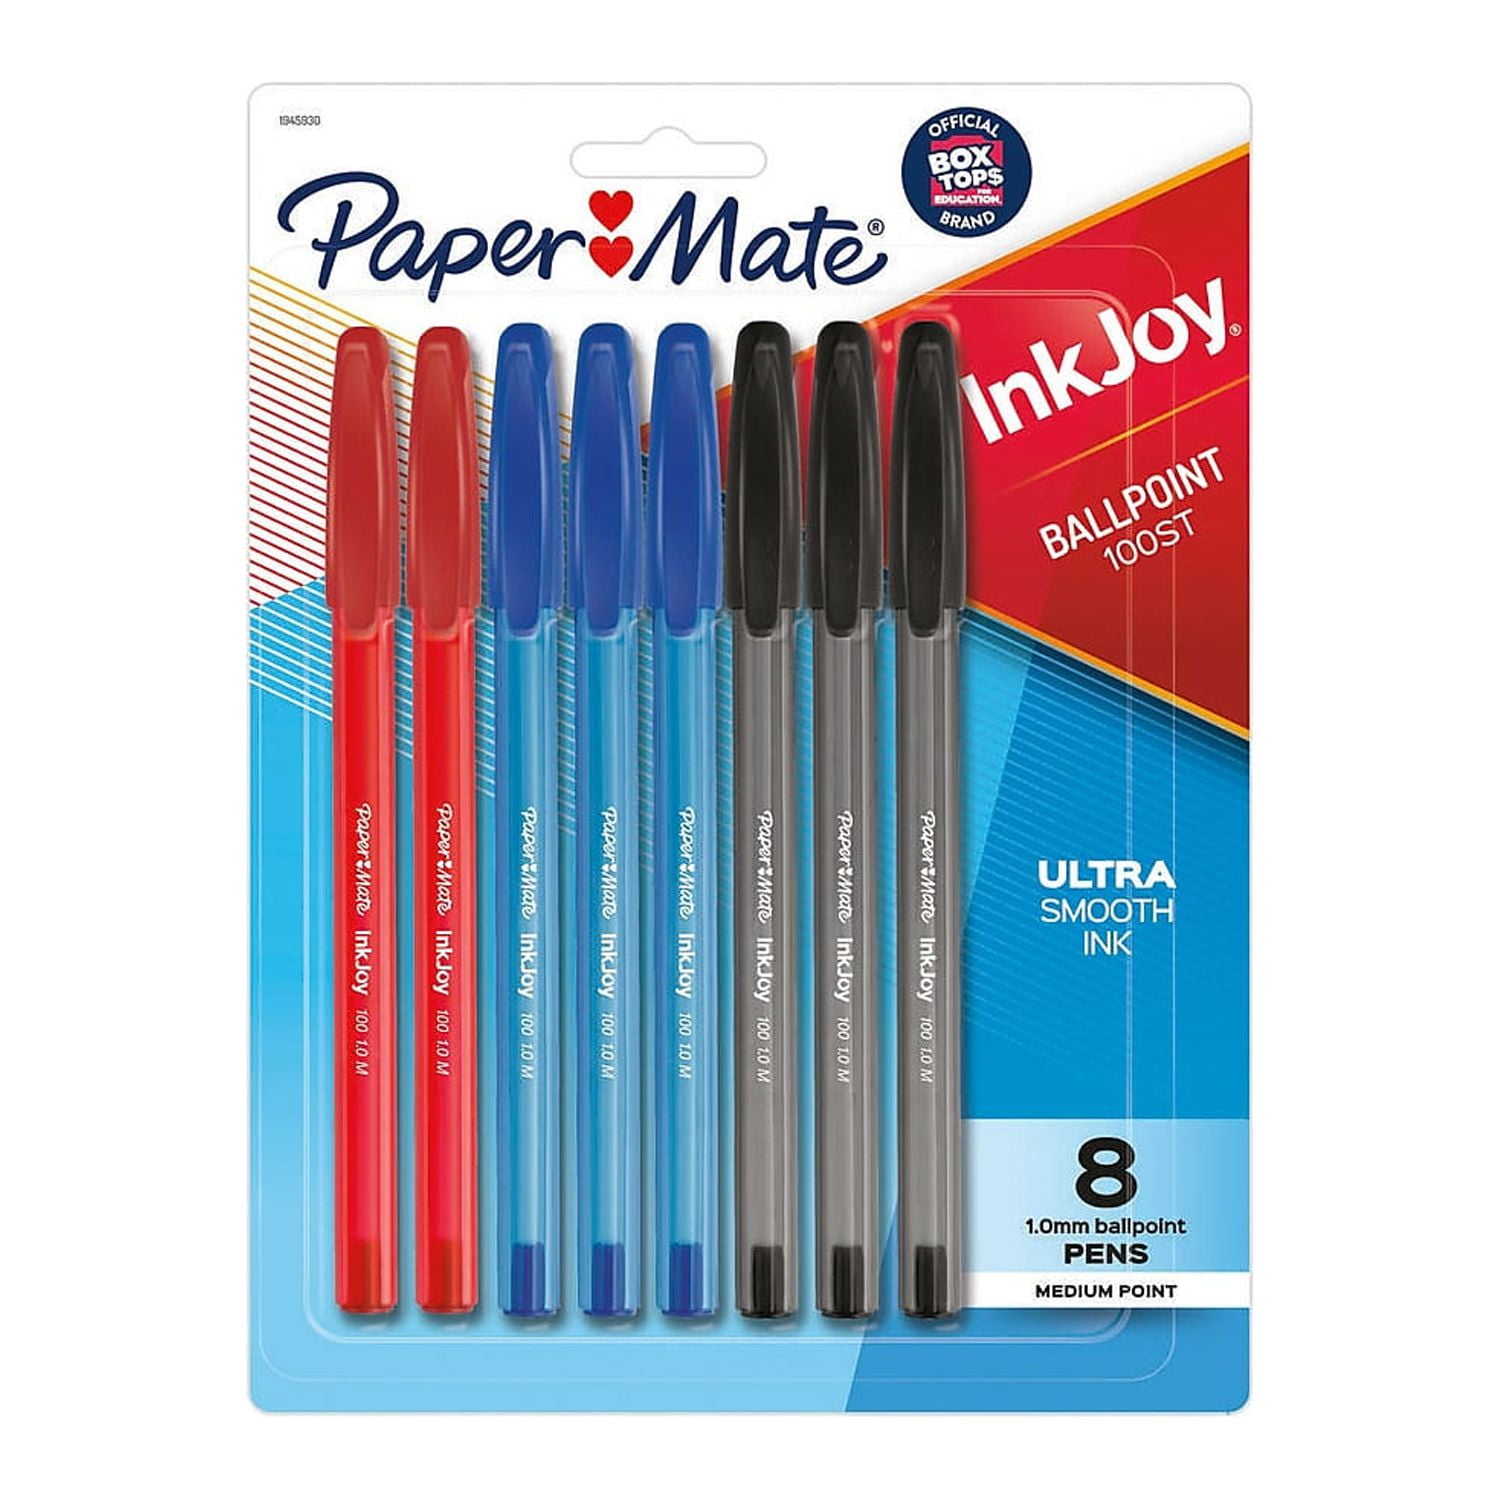 Branded Paper Mate Inkjoy White Pens - PBP3596